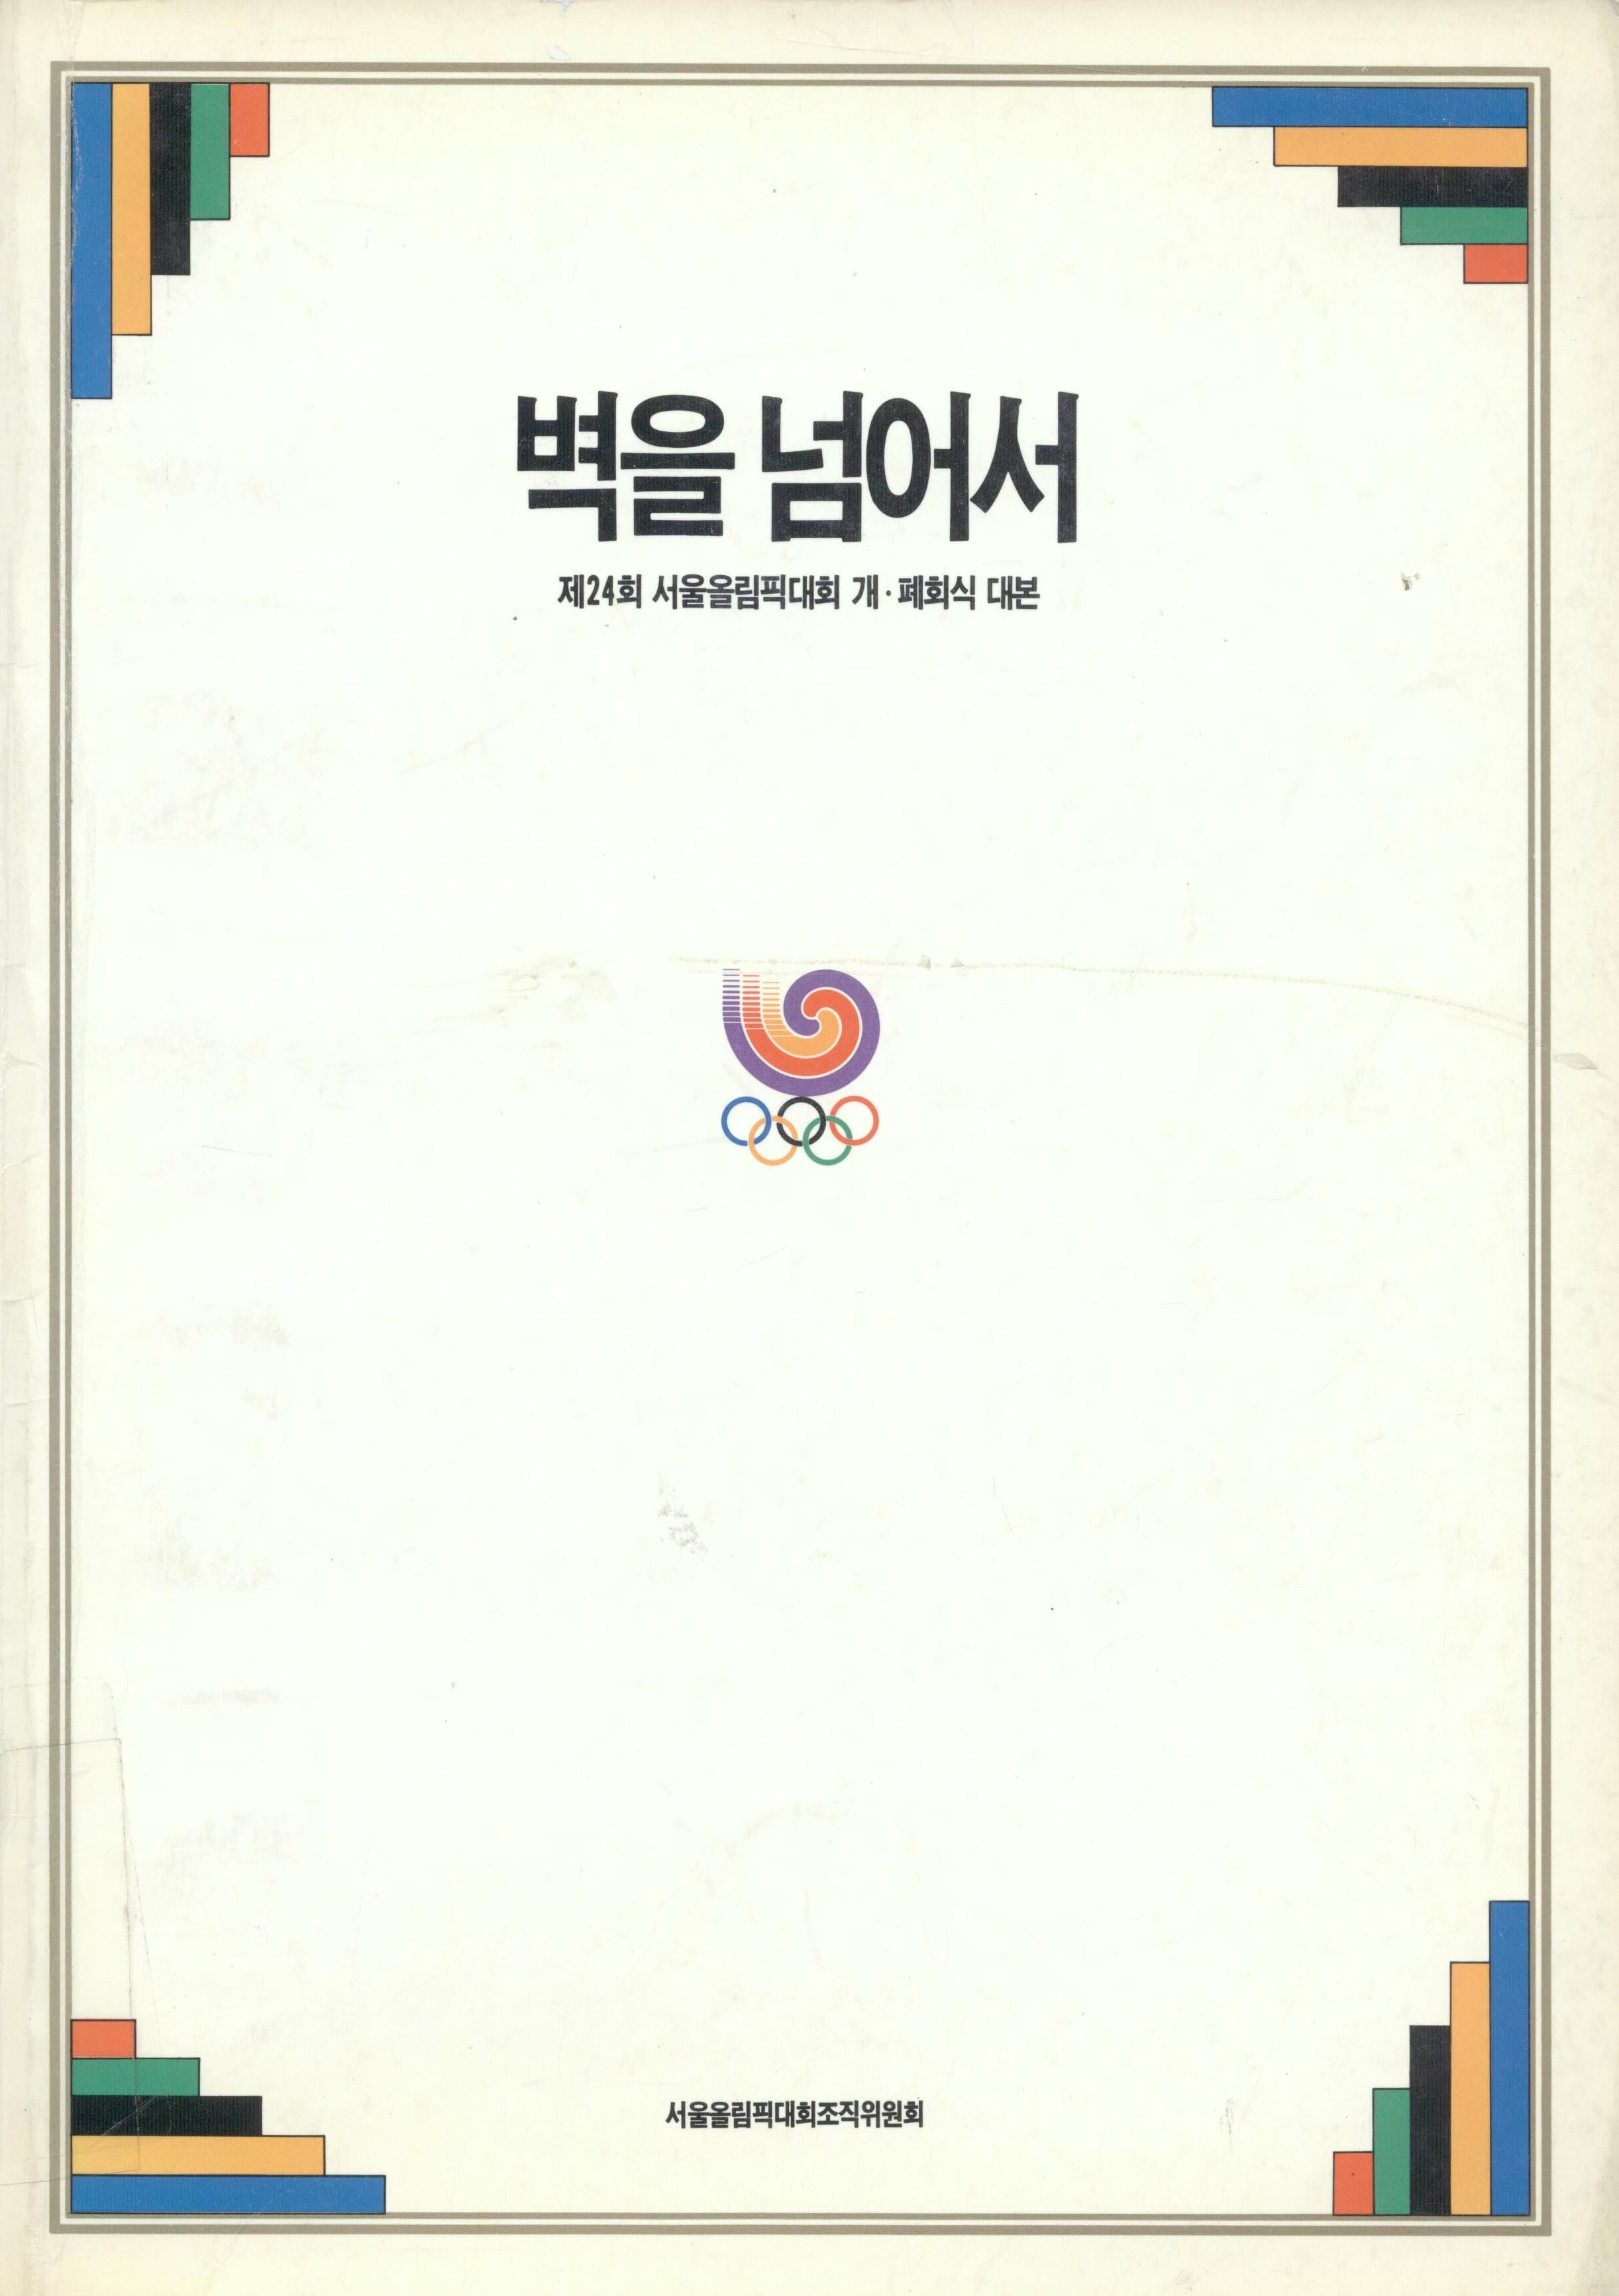 88서울 올림픽의 기획자